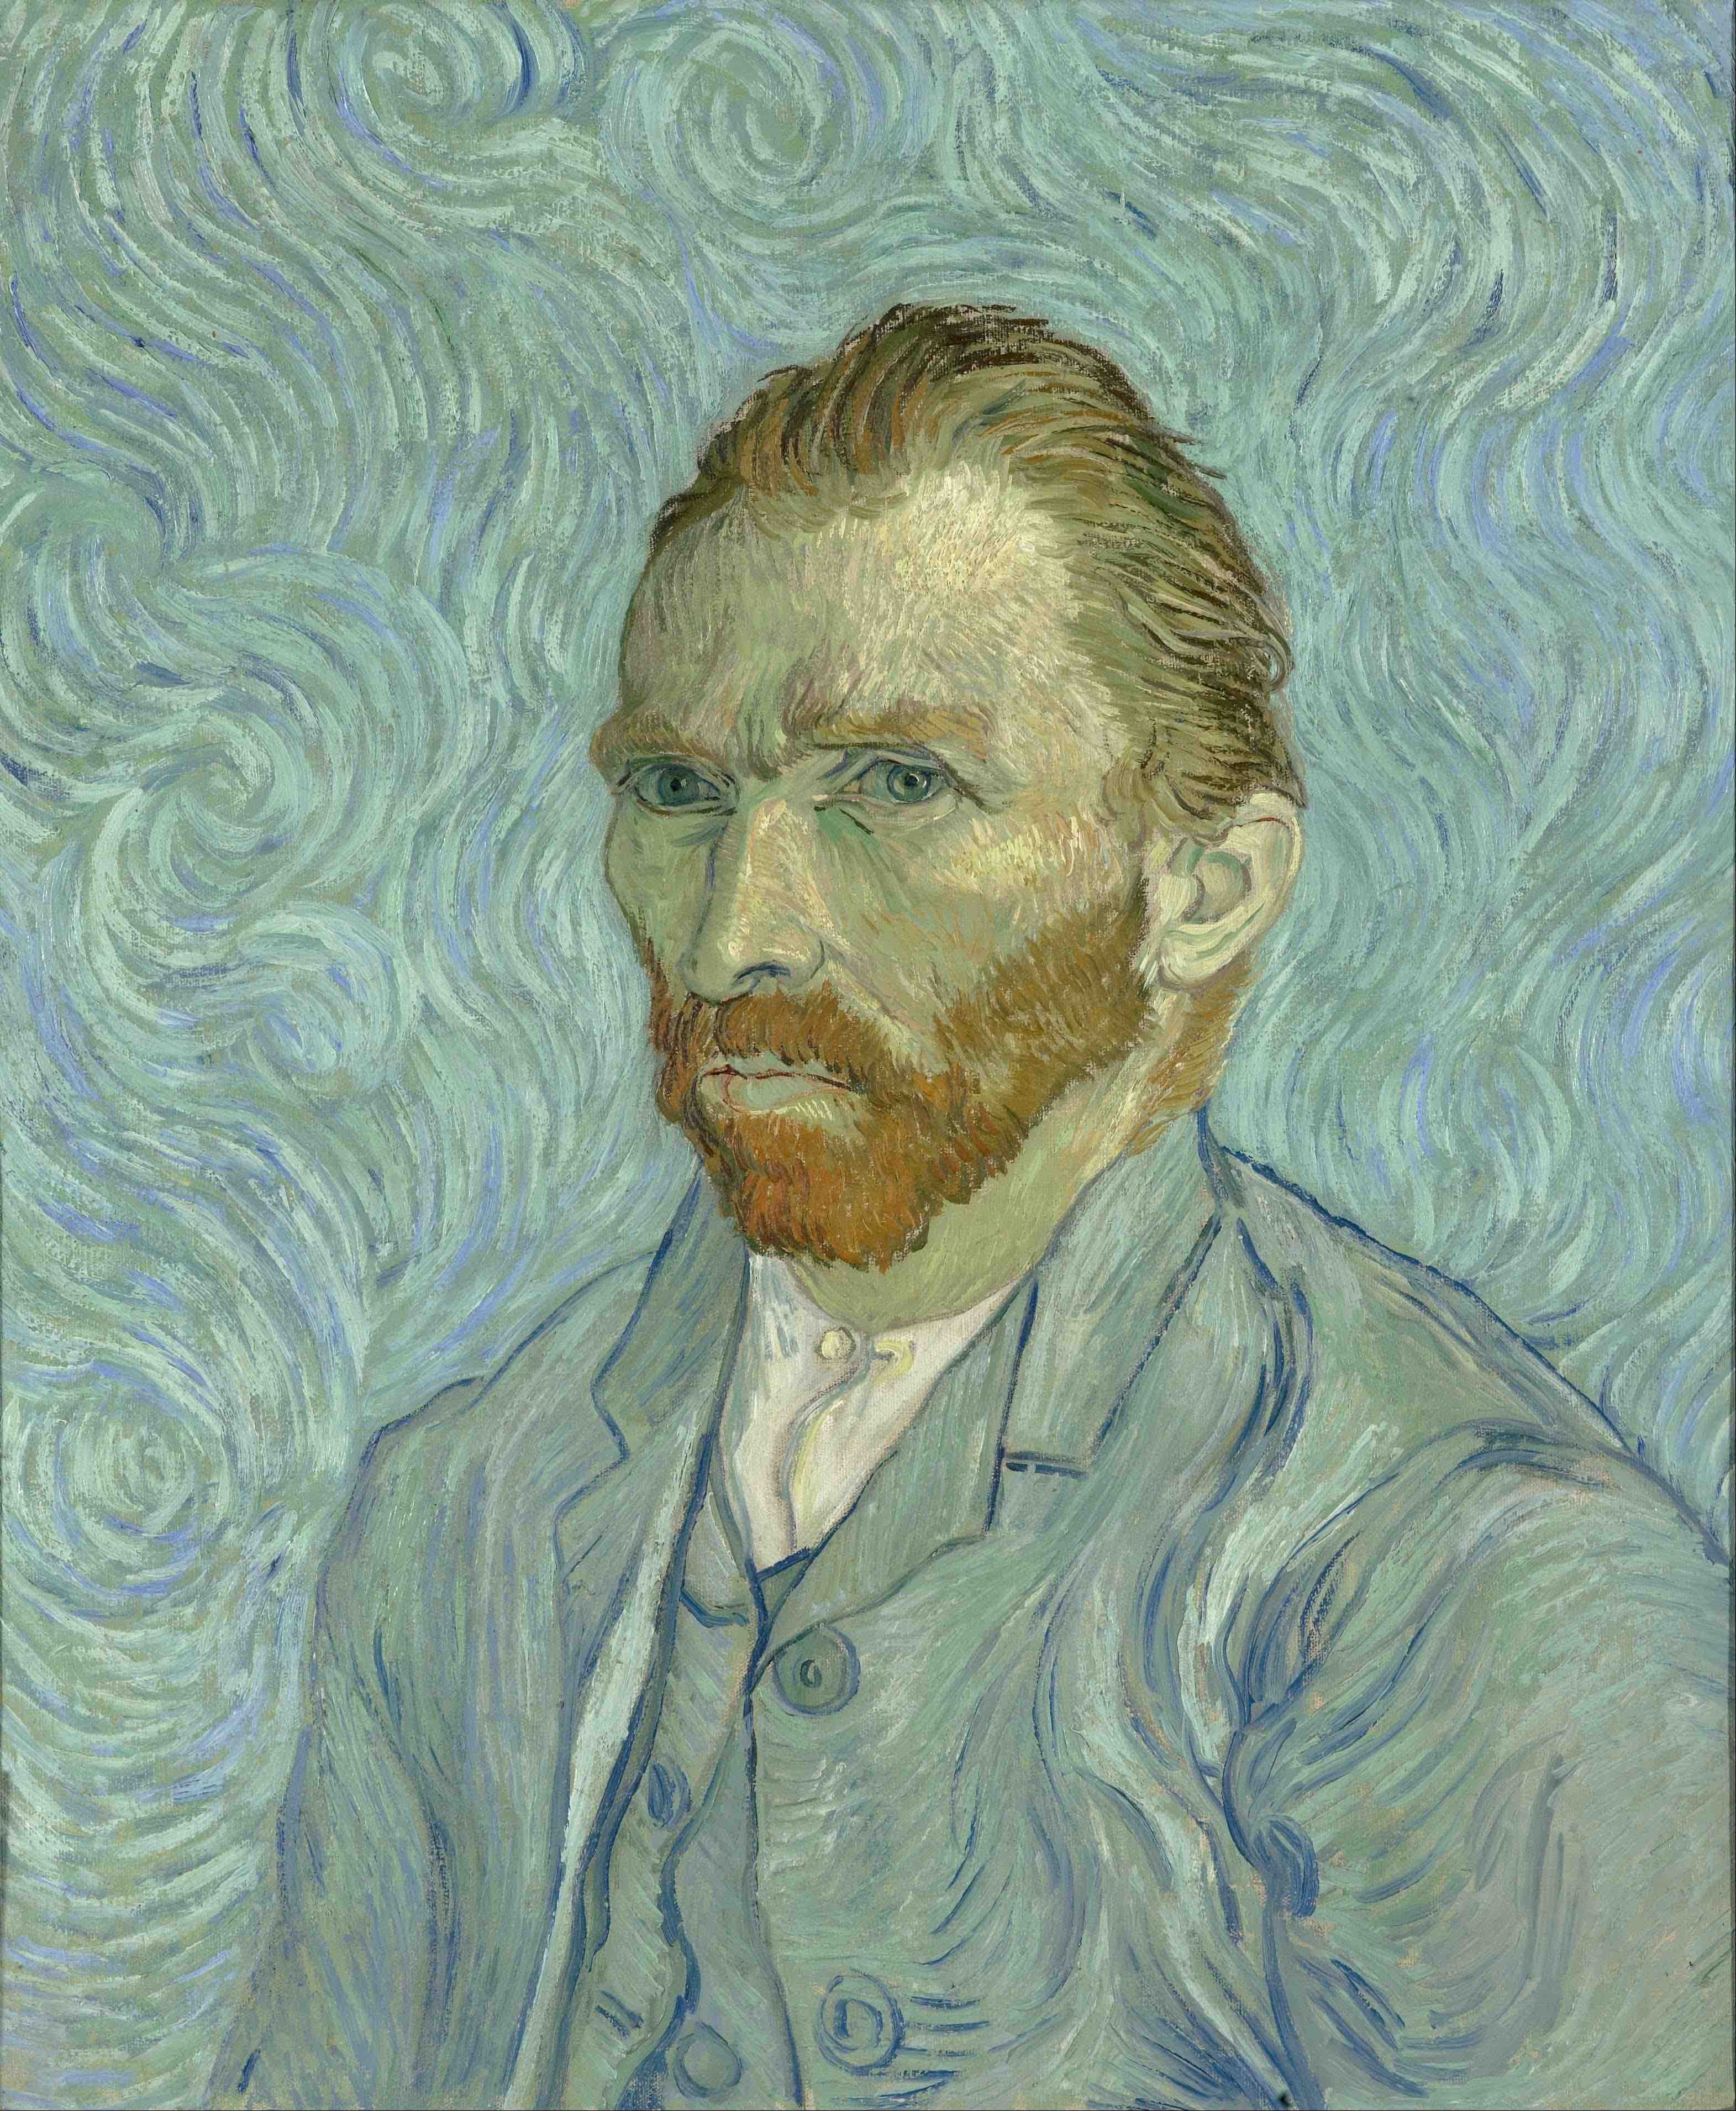 Oil Painting: Self Portrait 1889 by Vincent van Gogh